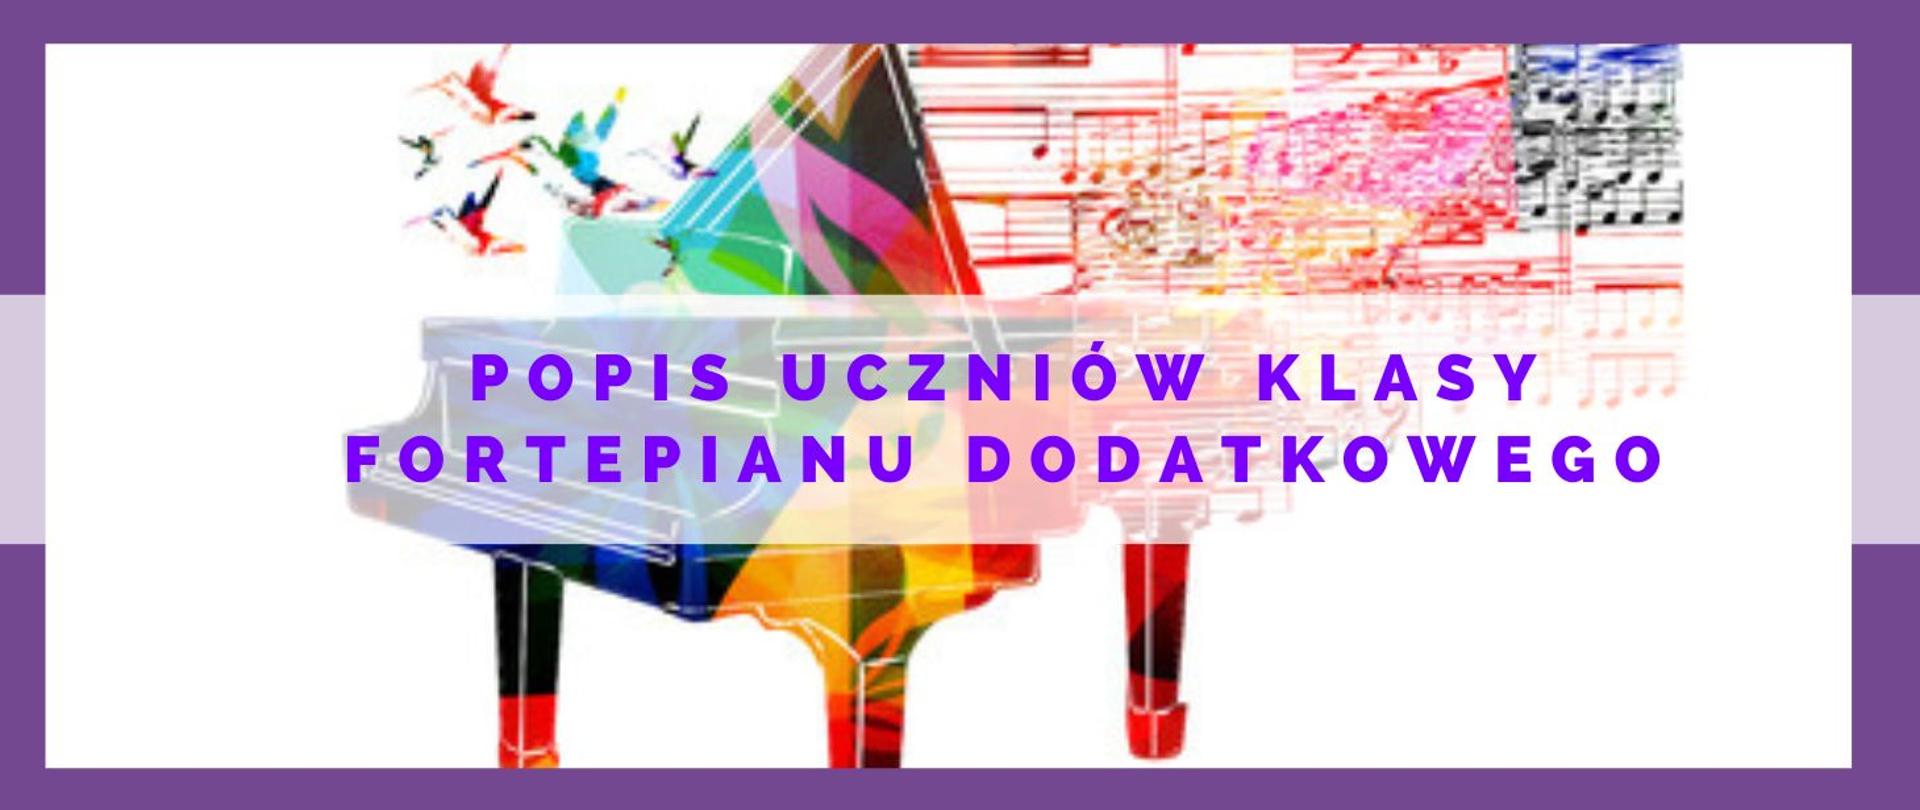 grafika kolorowego fortepianu i kolorowej partytury nutowej, na środku fioletowymi literami popis uczniów klasy fortepianu dodatkowego